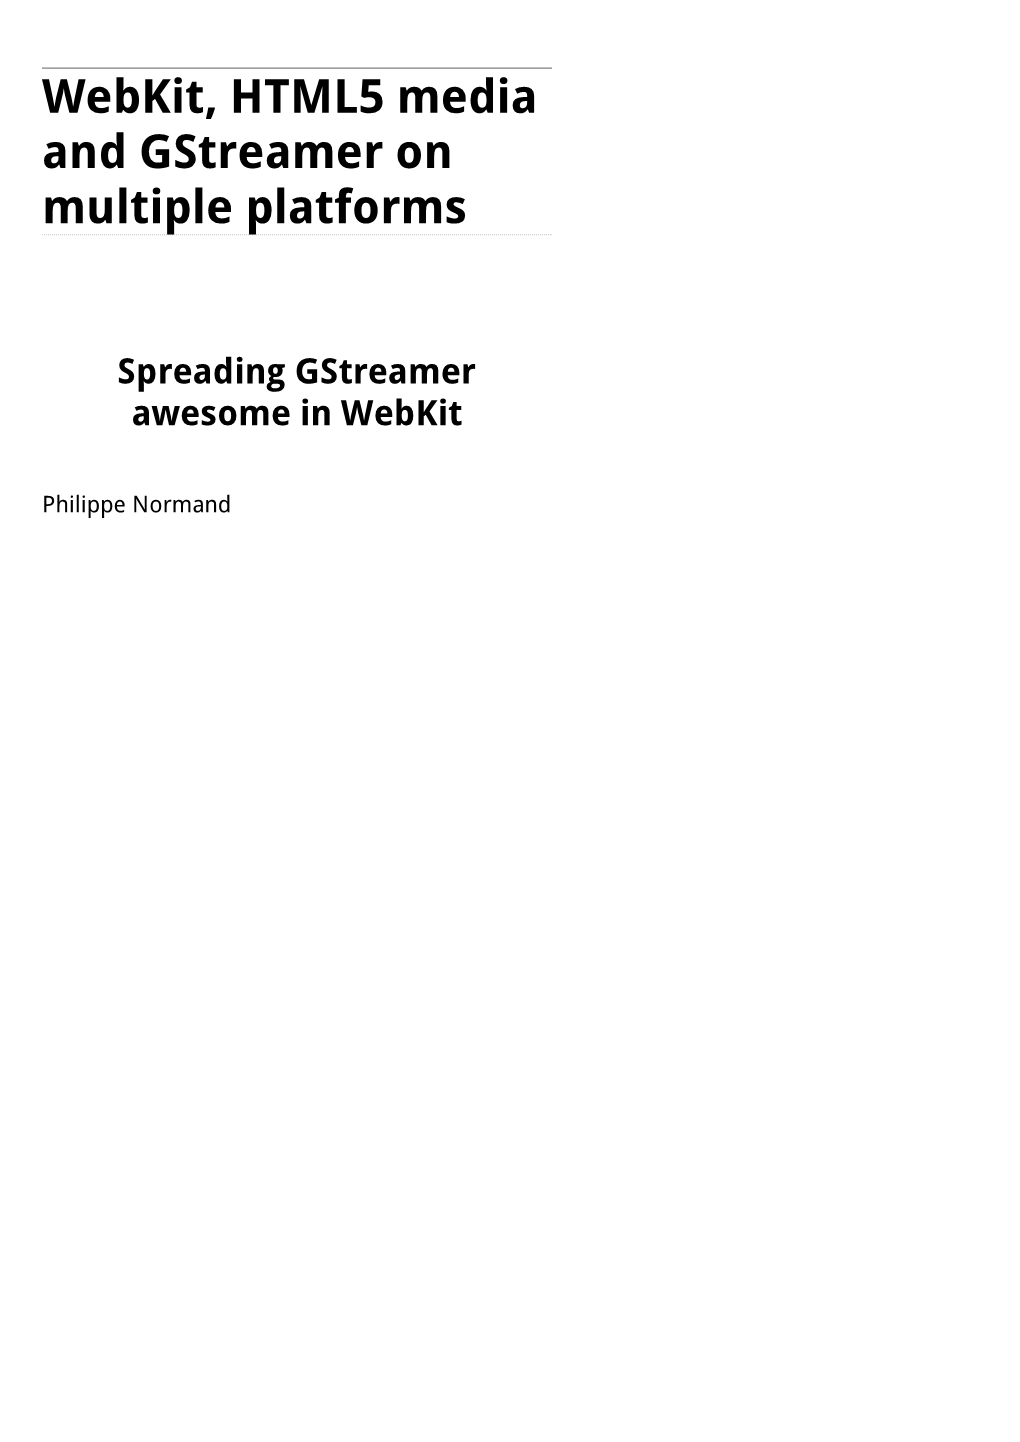 Webkit, HTML5 Media and Gstreamer on Multiple Platforms